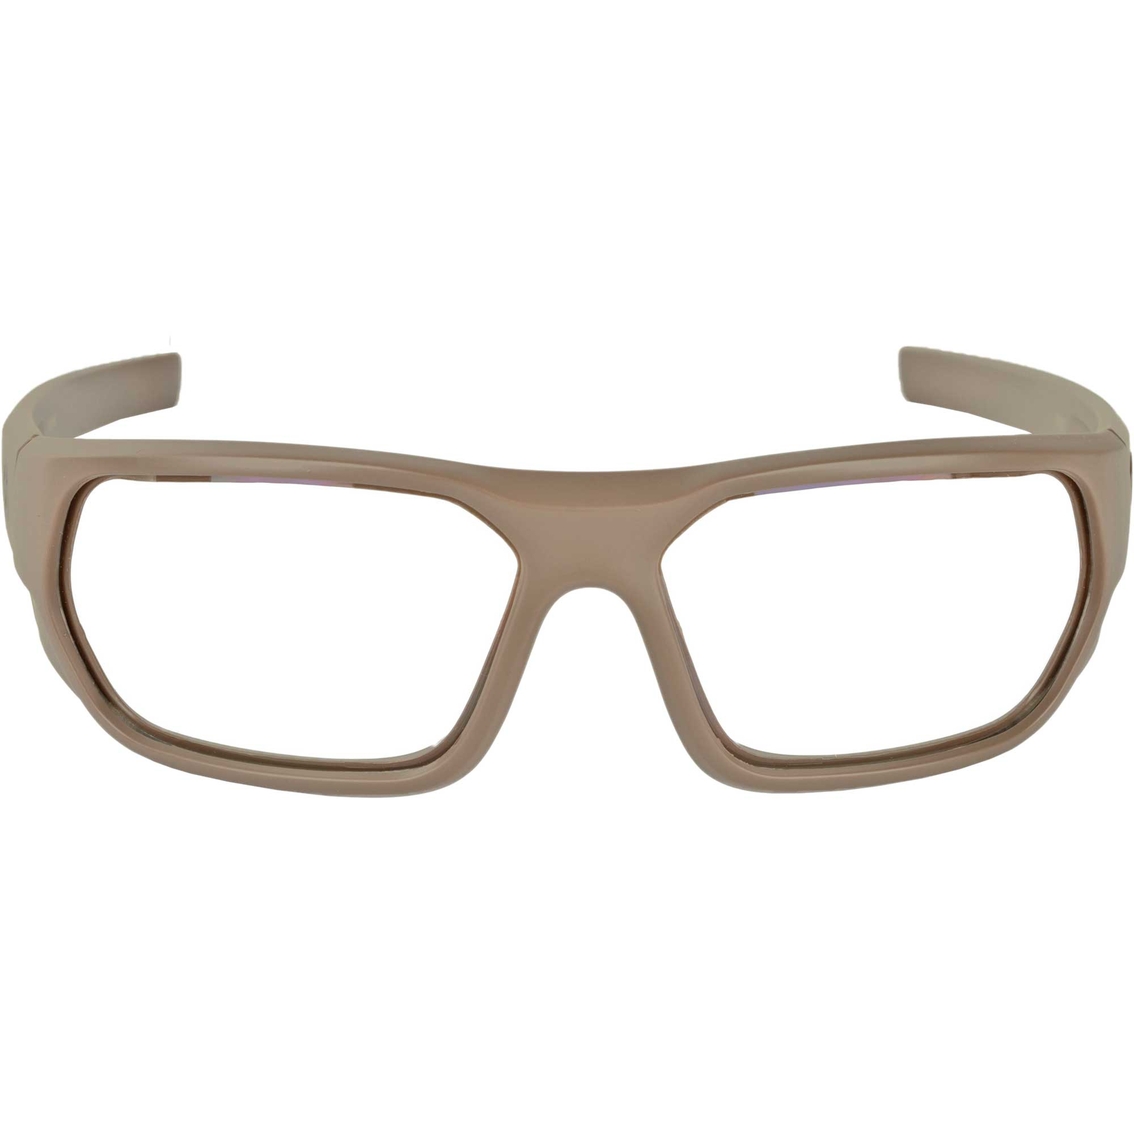 Magpul Radius Eyewear FDE Frame Gray Lens - Image 2 of 2